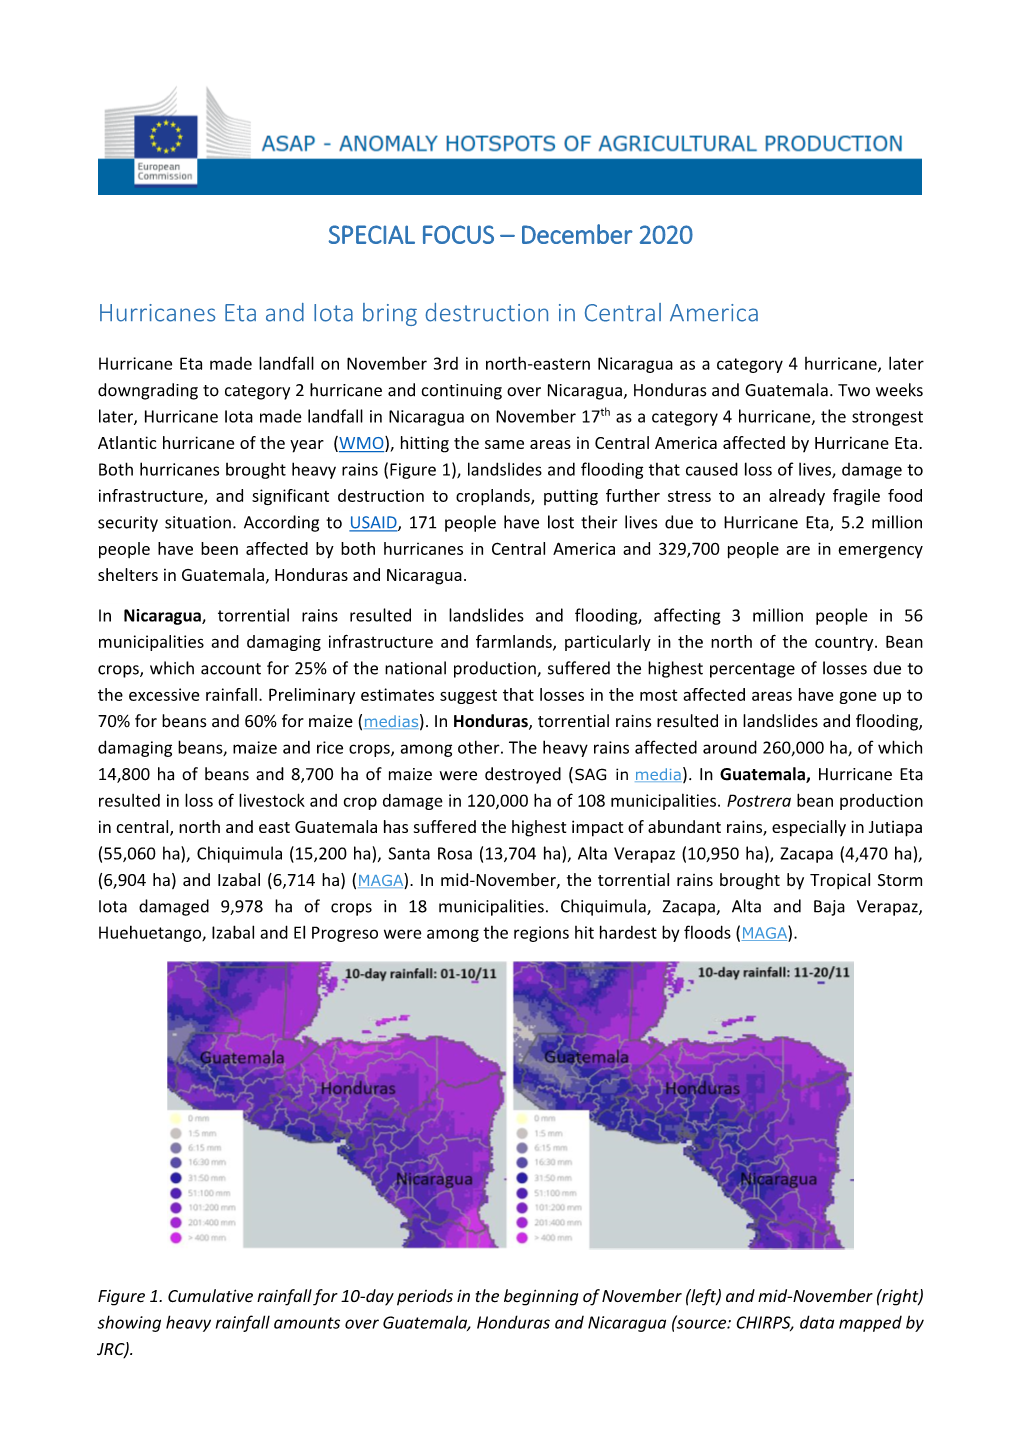 SPECIAL FOCUS – December 2020 Hurricanes Eta and Iota Bring